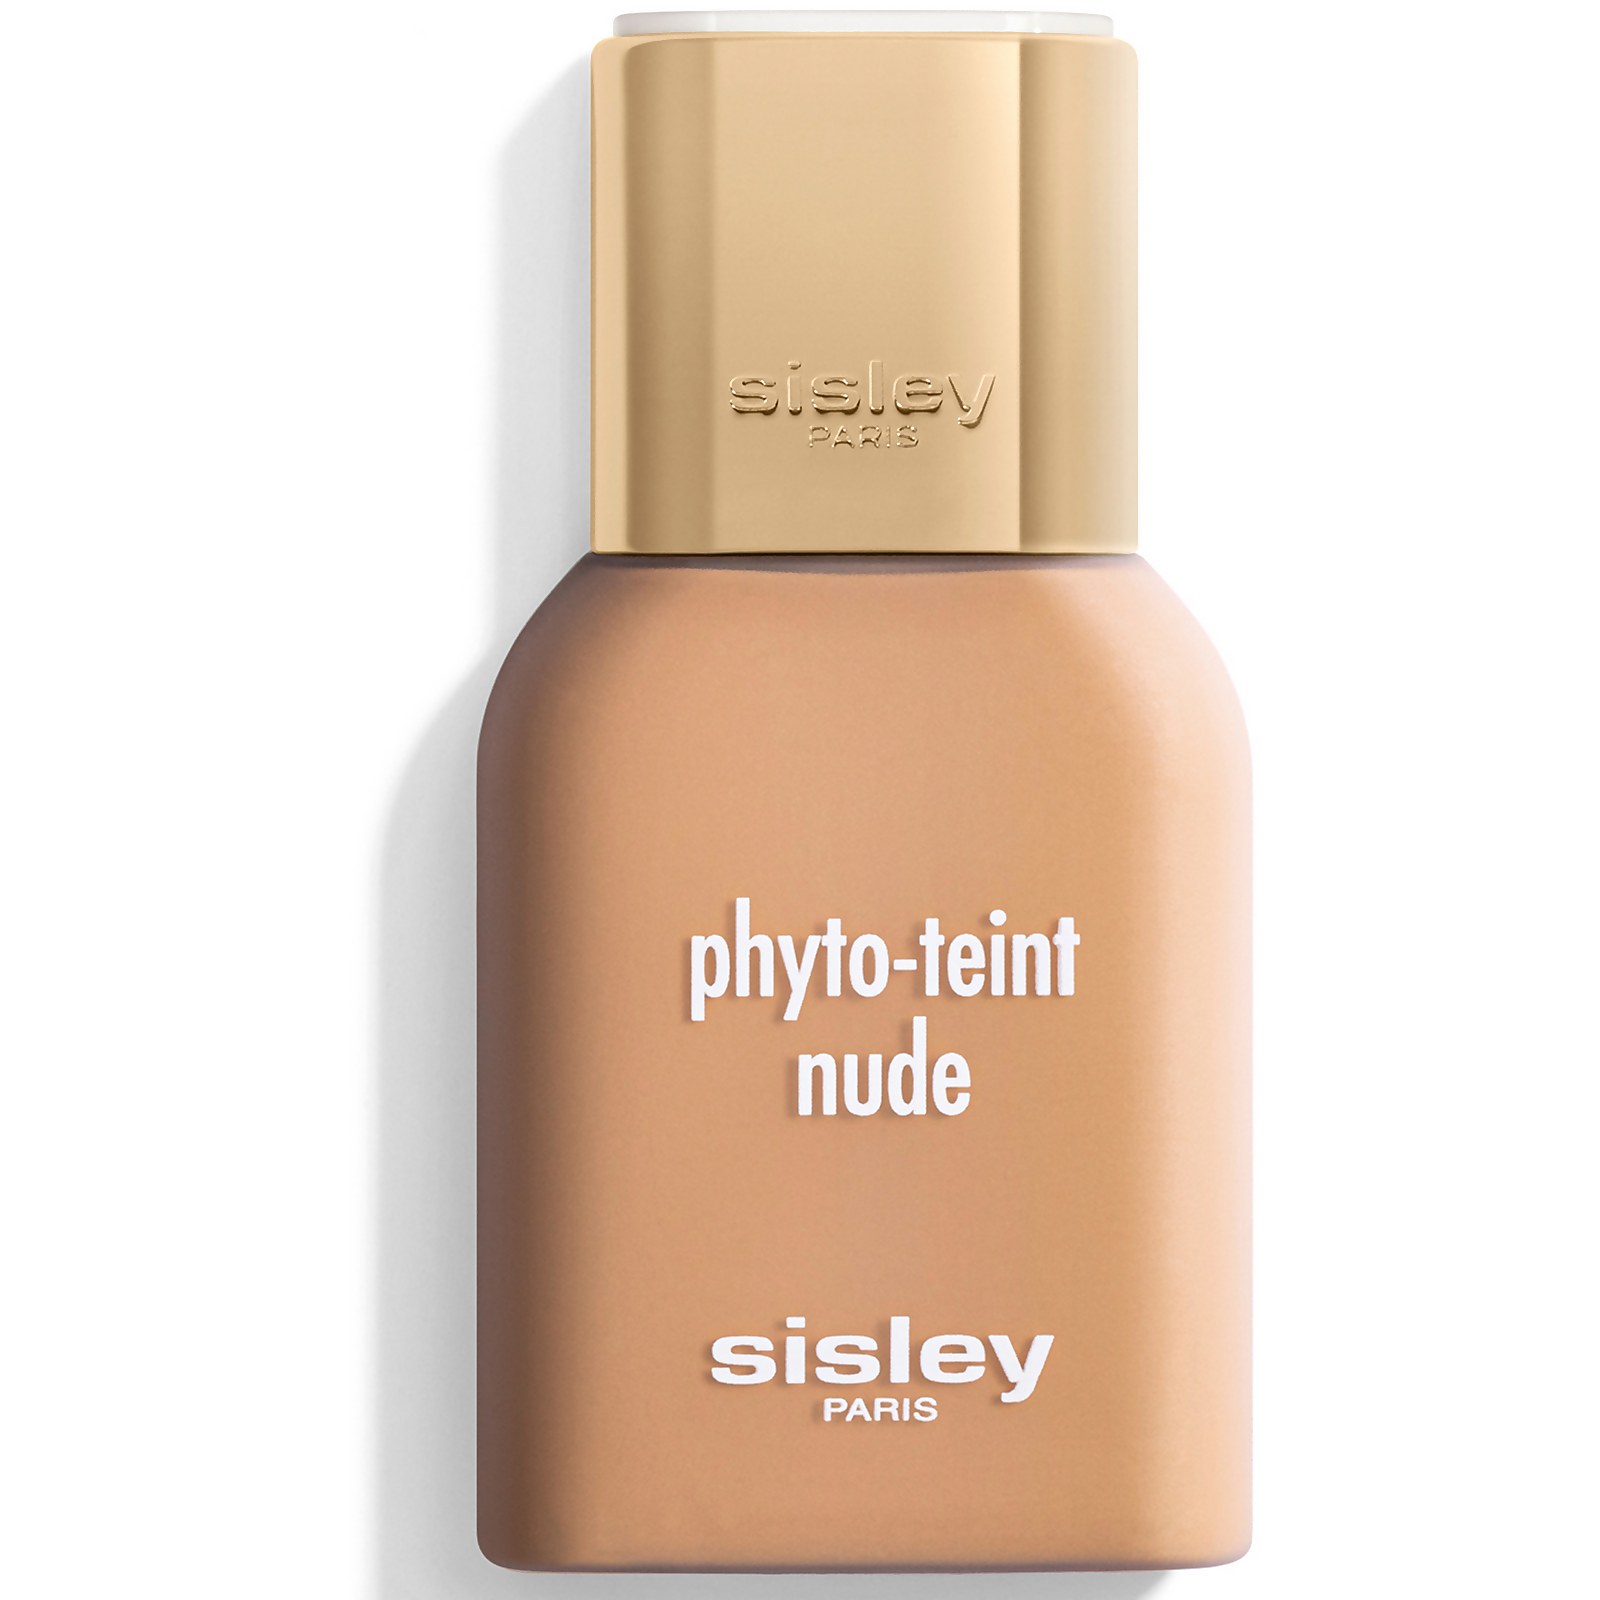 Photos - Foundation & Concealer Sisley PARIS Phyto-Teint Nude Foundation 30ml  - Cinnamon (Various Shades)